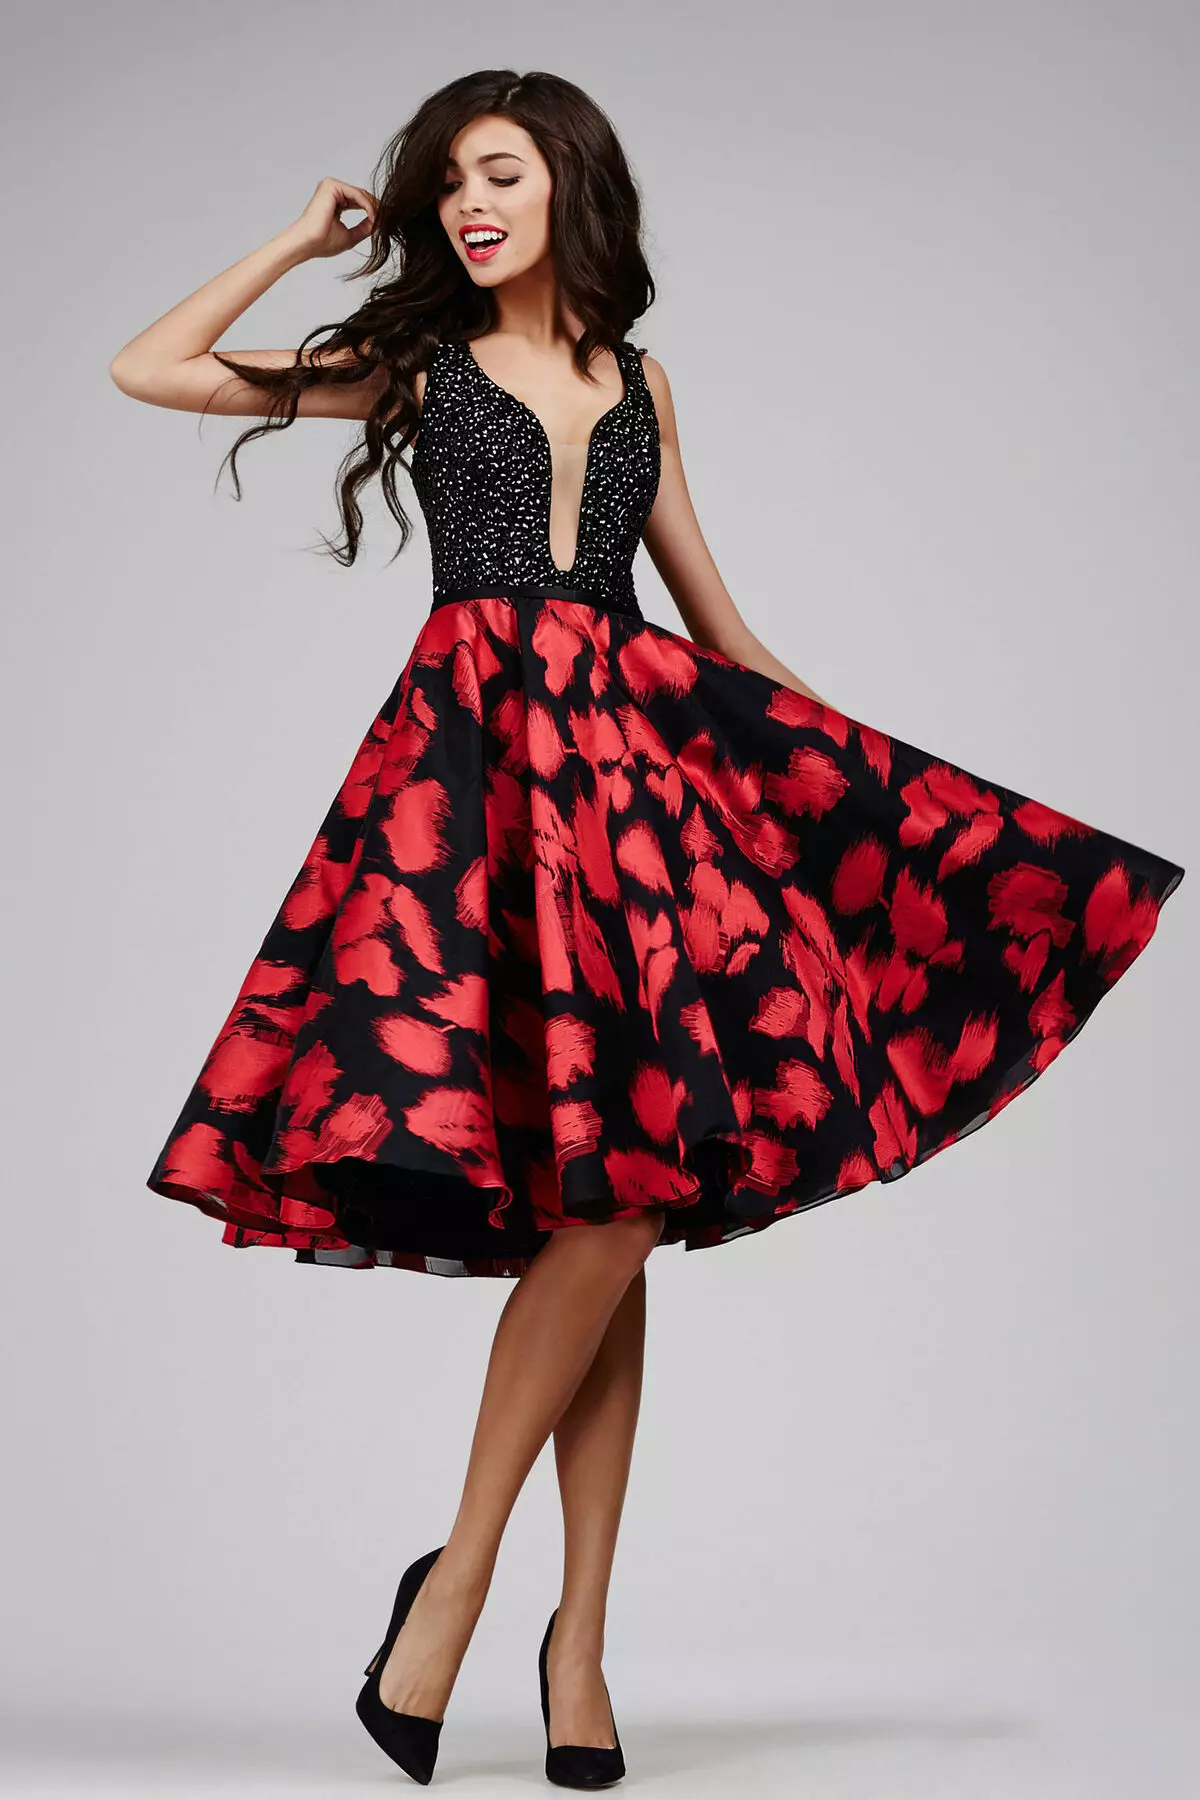 黑色連衣裙用紅色花朵